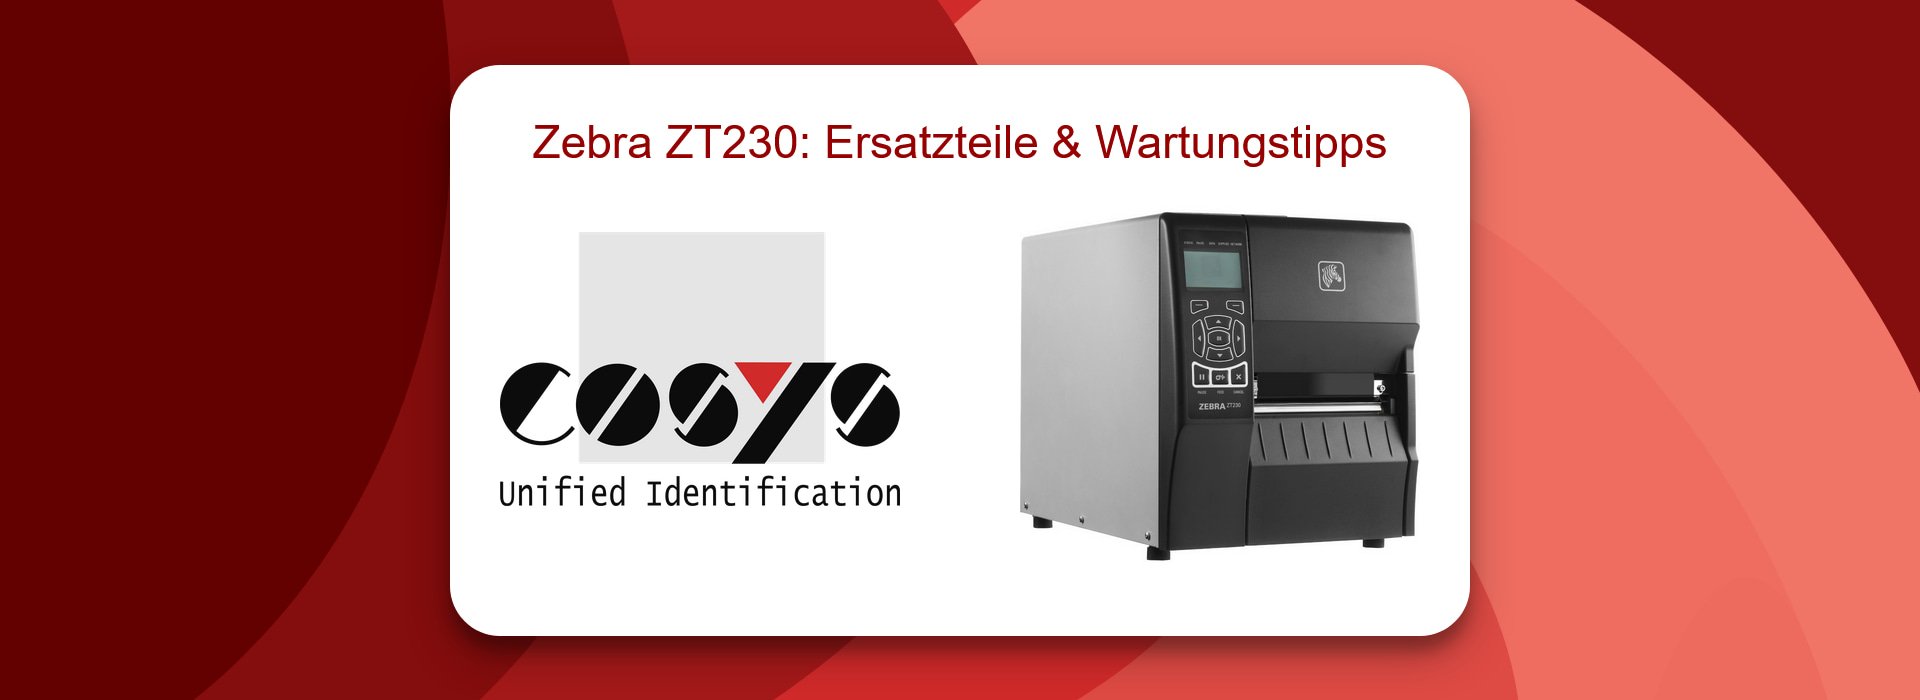 Zebra ZT230: Ersatzteile und Wartungstipps